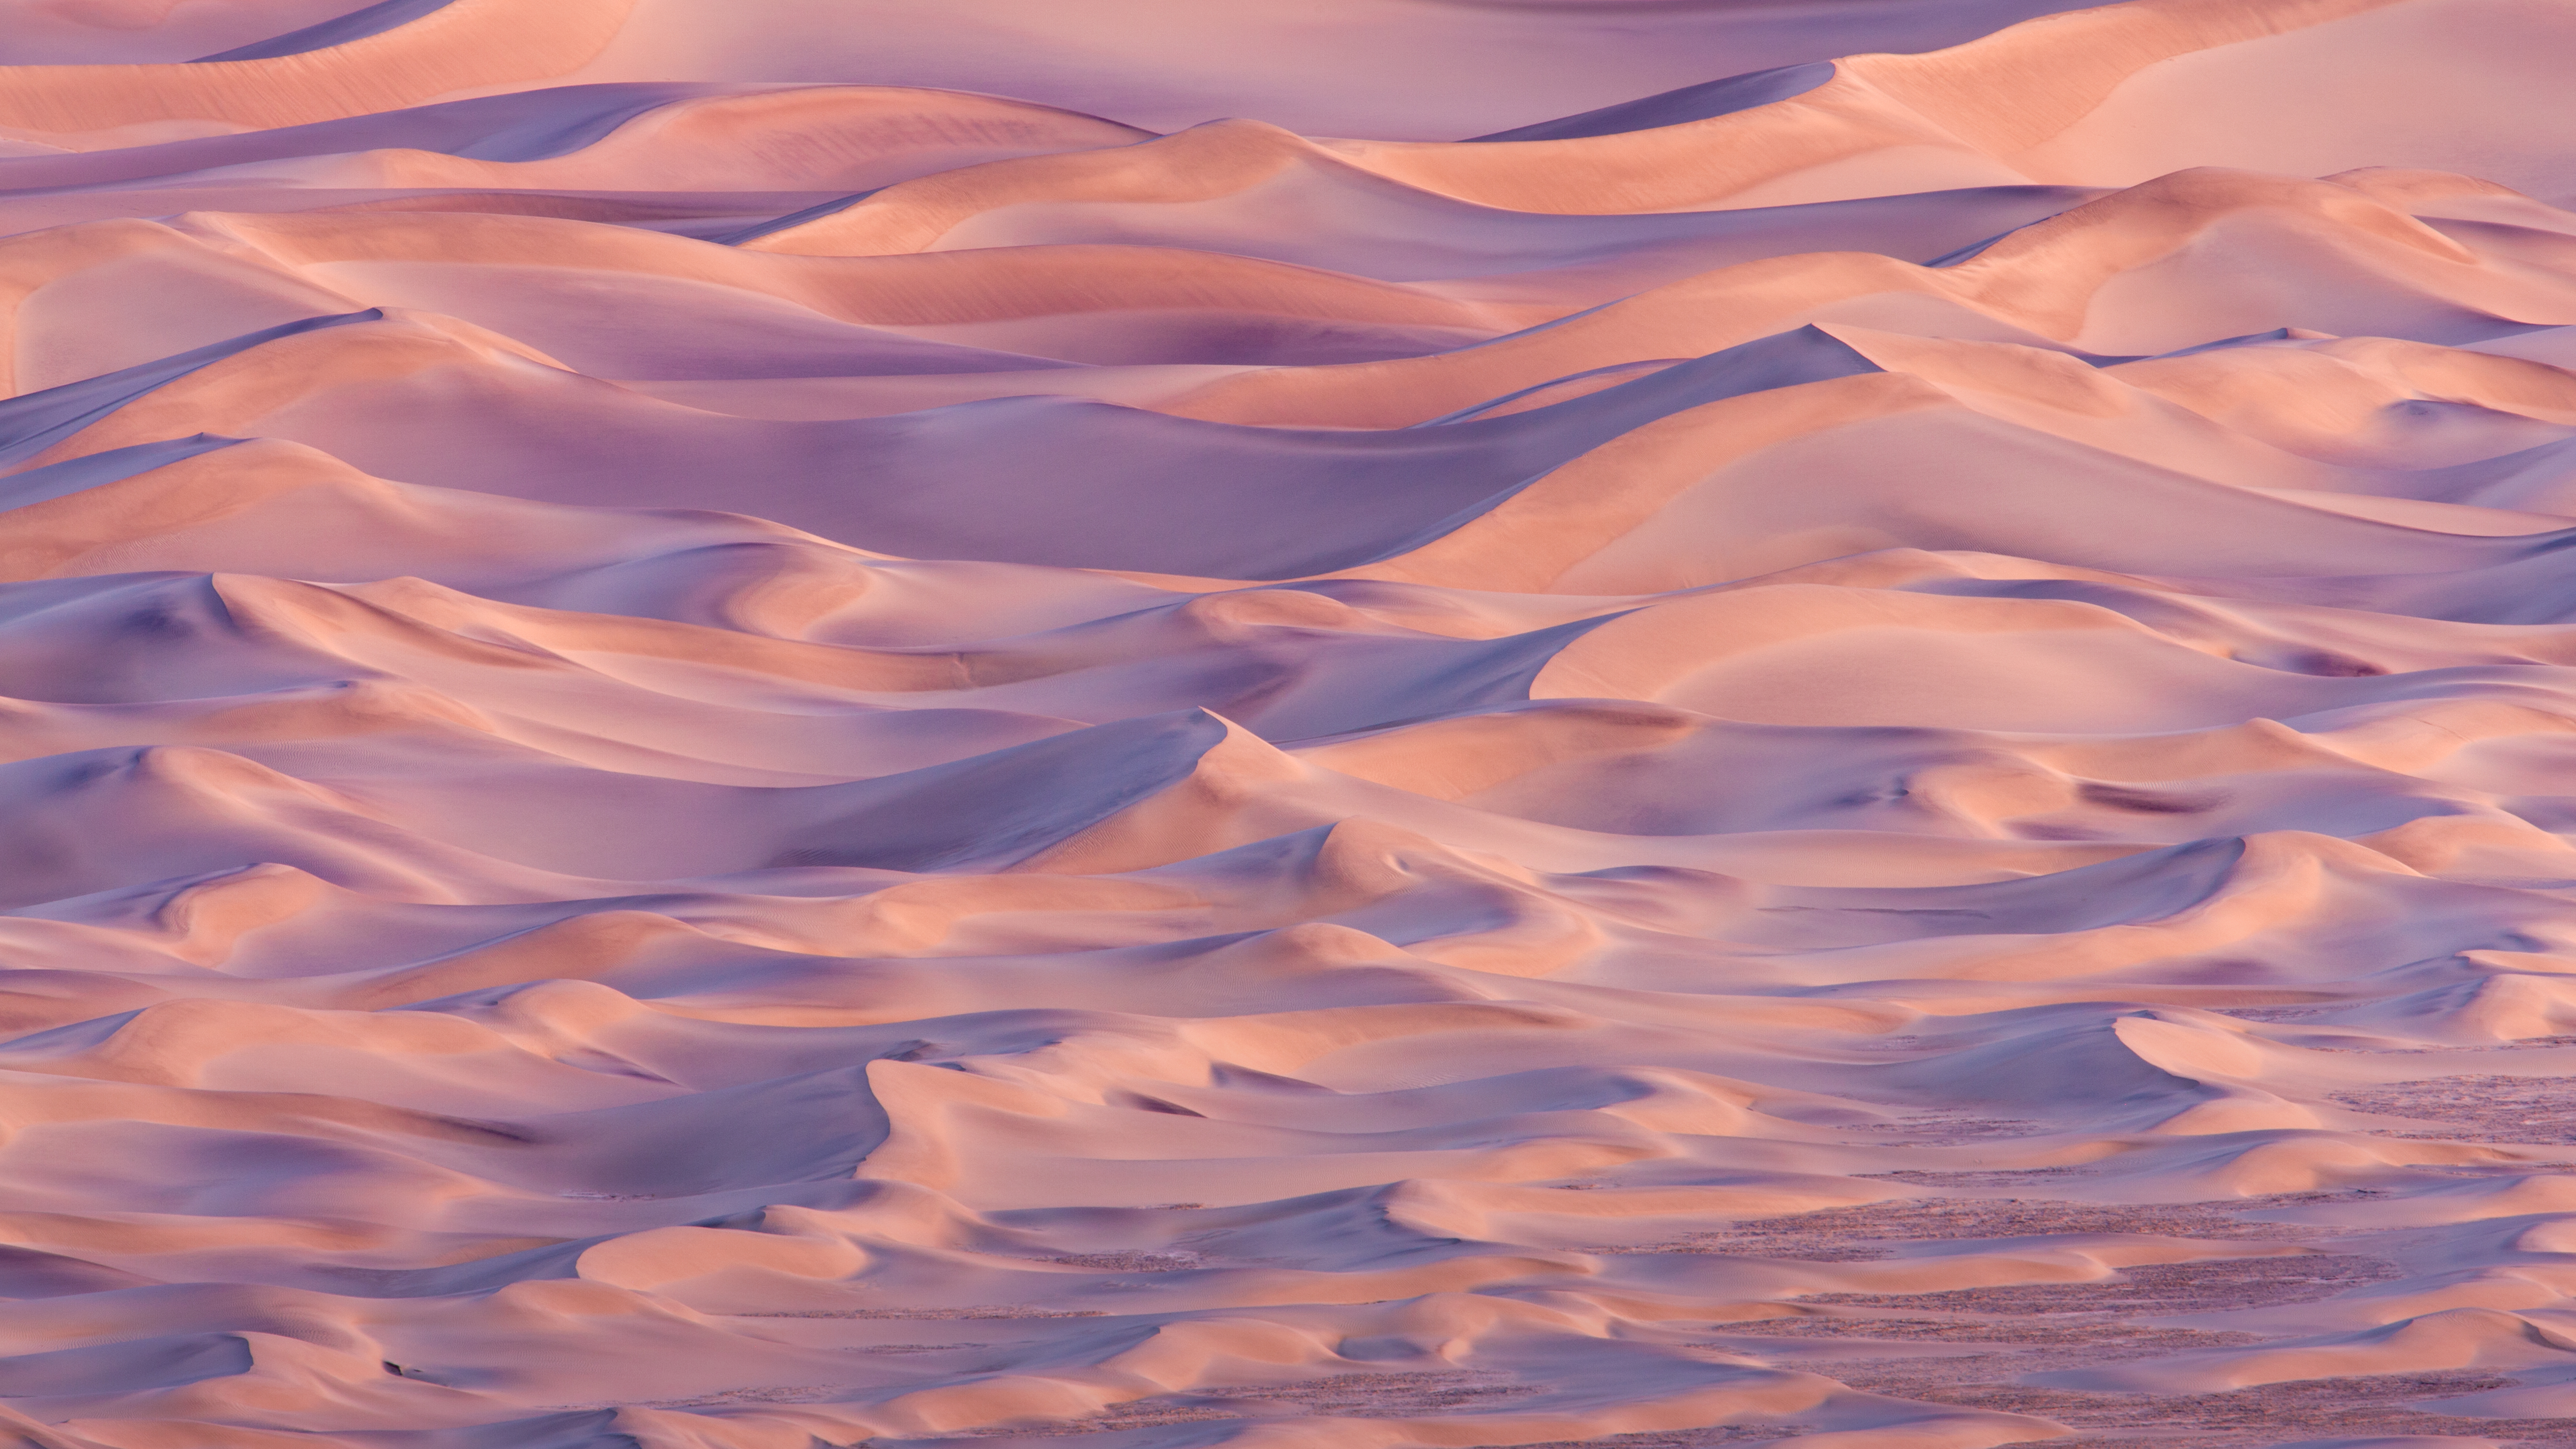 os x mavericks wallpaper,sky,natural environment,desert,cloud,sand